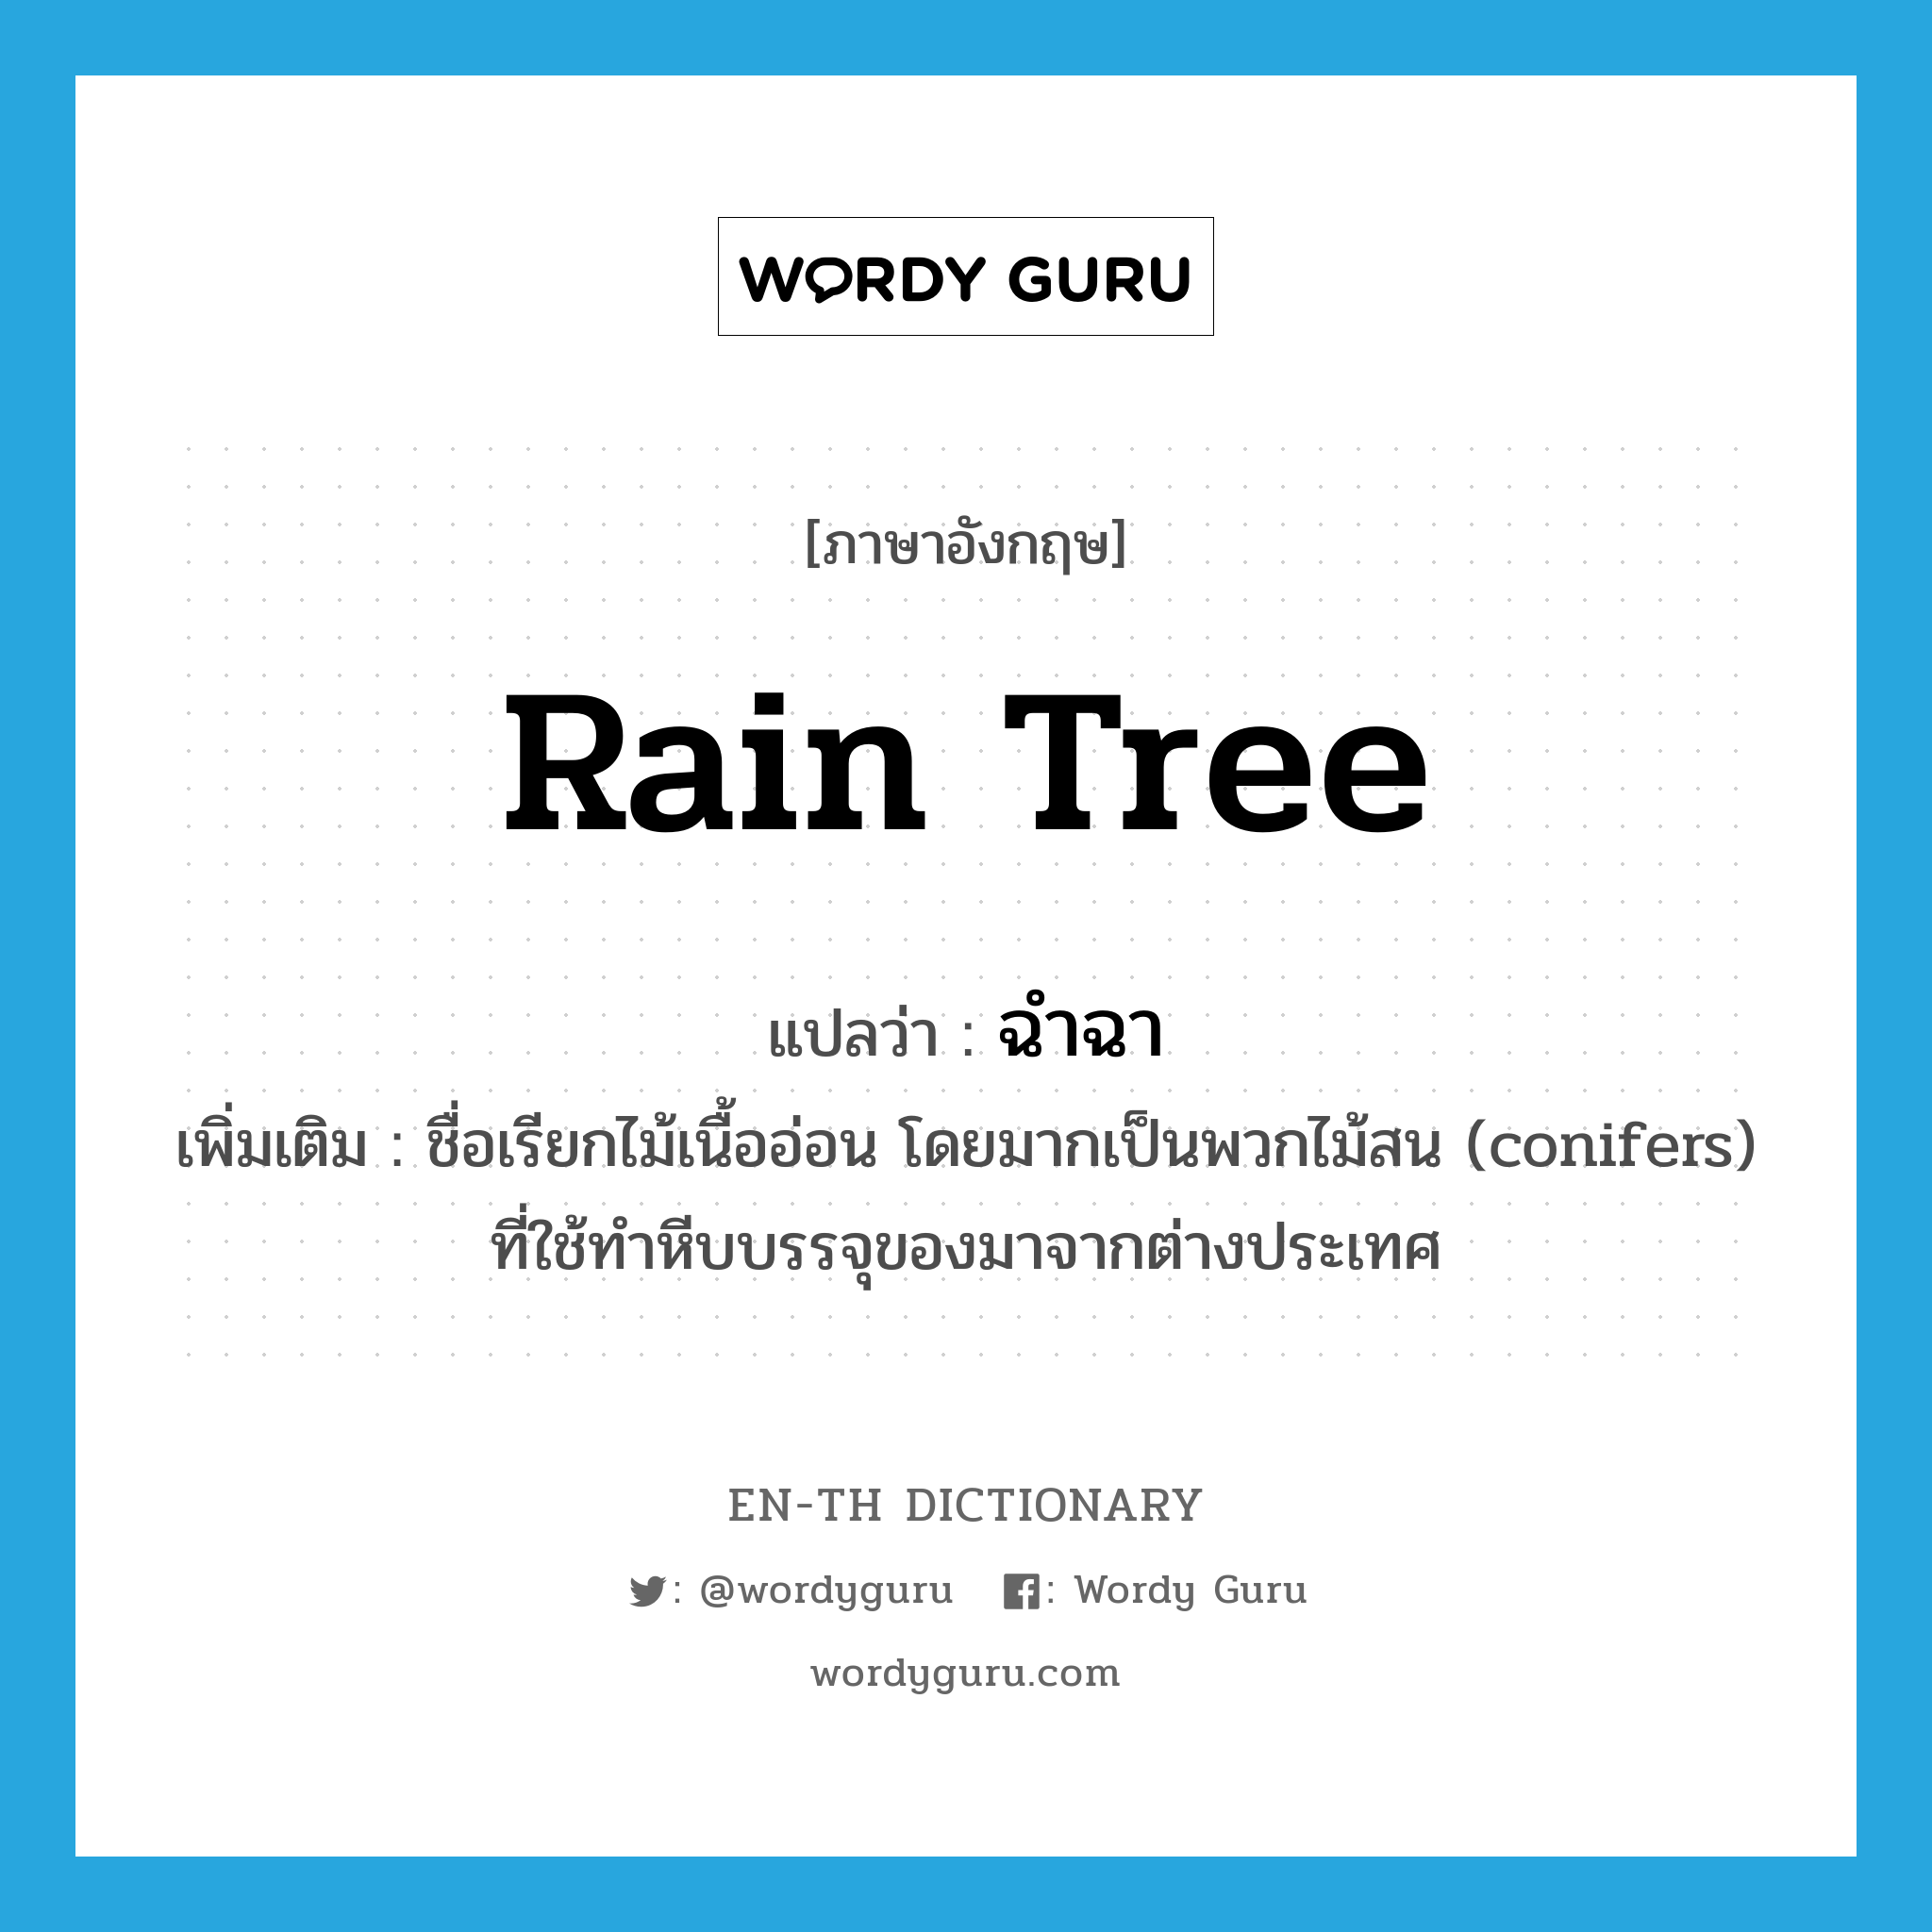 ฉำฉา ภาษาอังกฤษ?, คำศัพท์ภาษาอังกฤษ ฉำฉา แปลว่า rain tree ประเภท N เพิ่มเติม ชื่อเรียกไม้เนื้ออ่อน โดยมากเป็นพวกไม้สน (conifers) ที่ใช้ทำหีบบรรจุของมาจากต่างประเทศ หมวด N